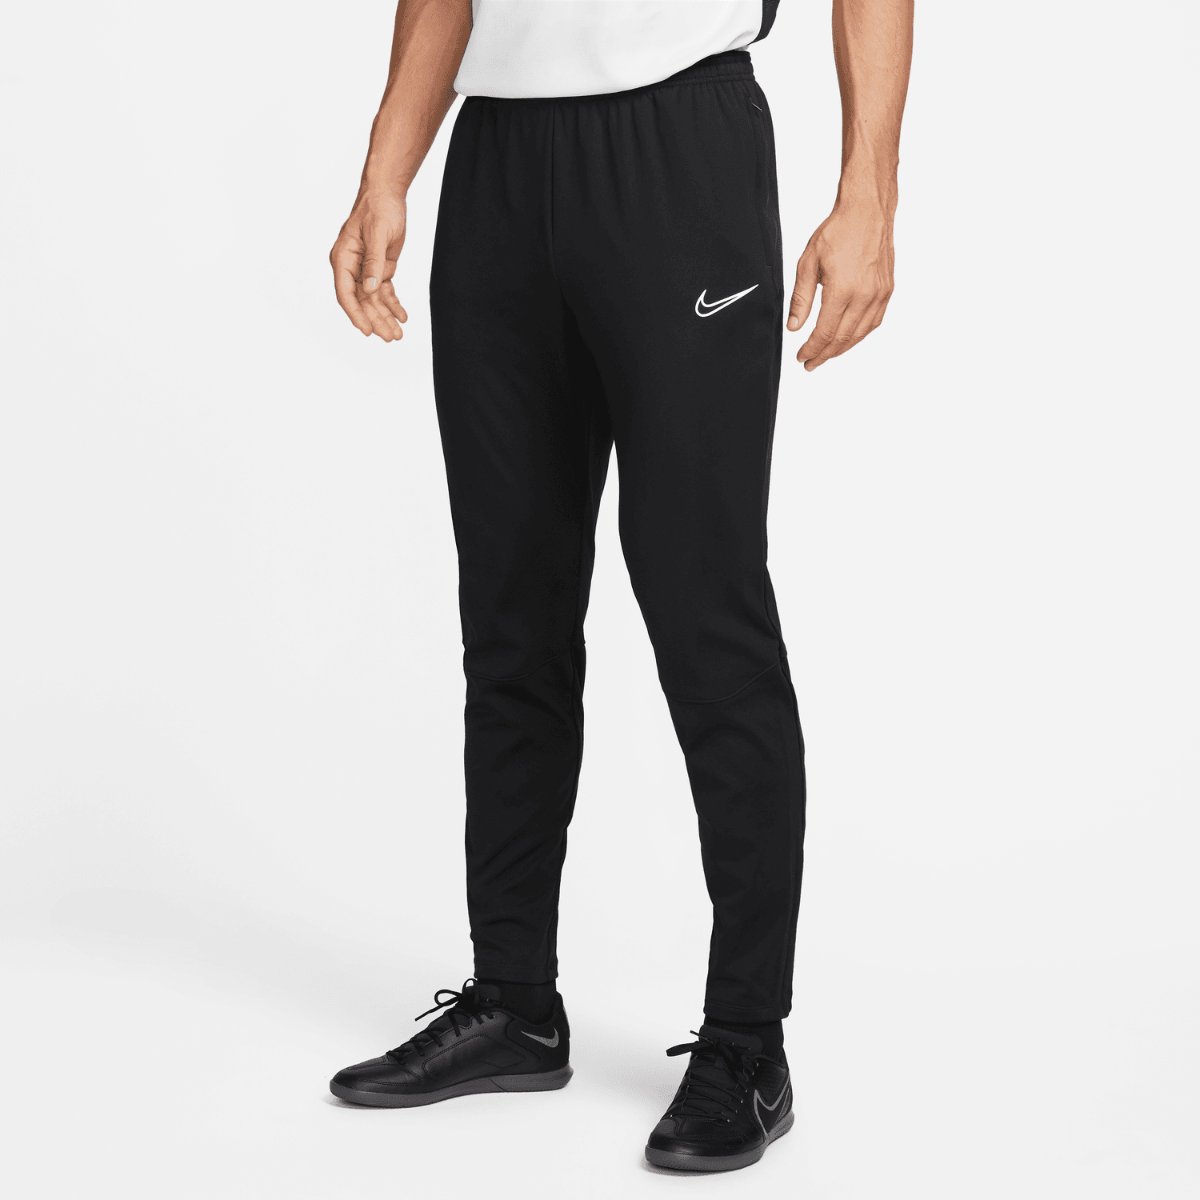 Pantaloni Nike Therma-Fit Academy - neri/bianchi